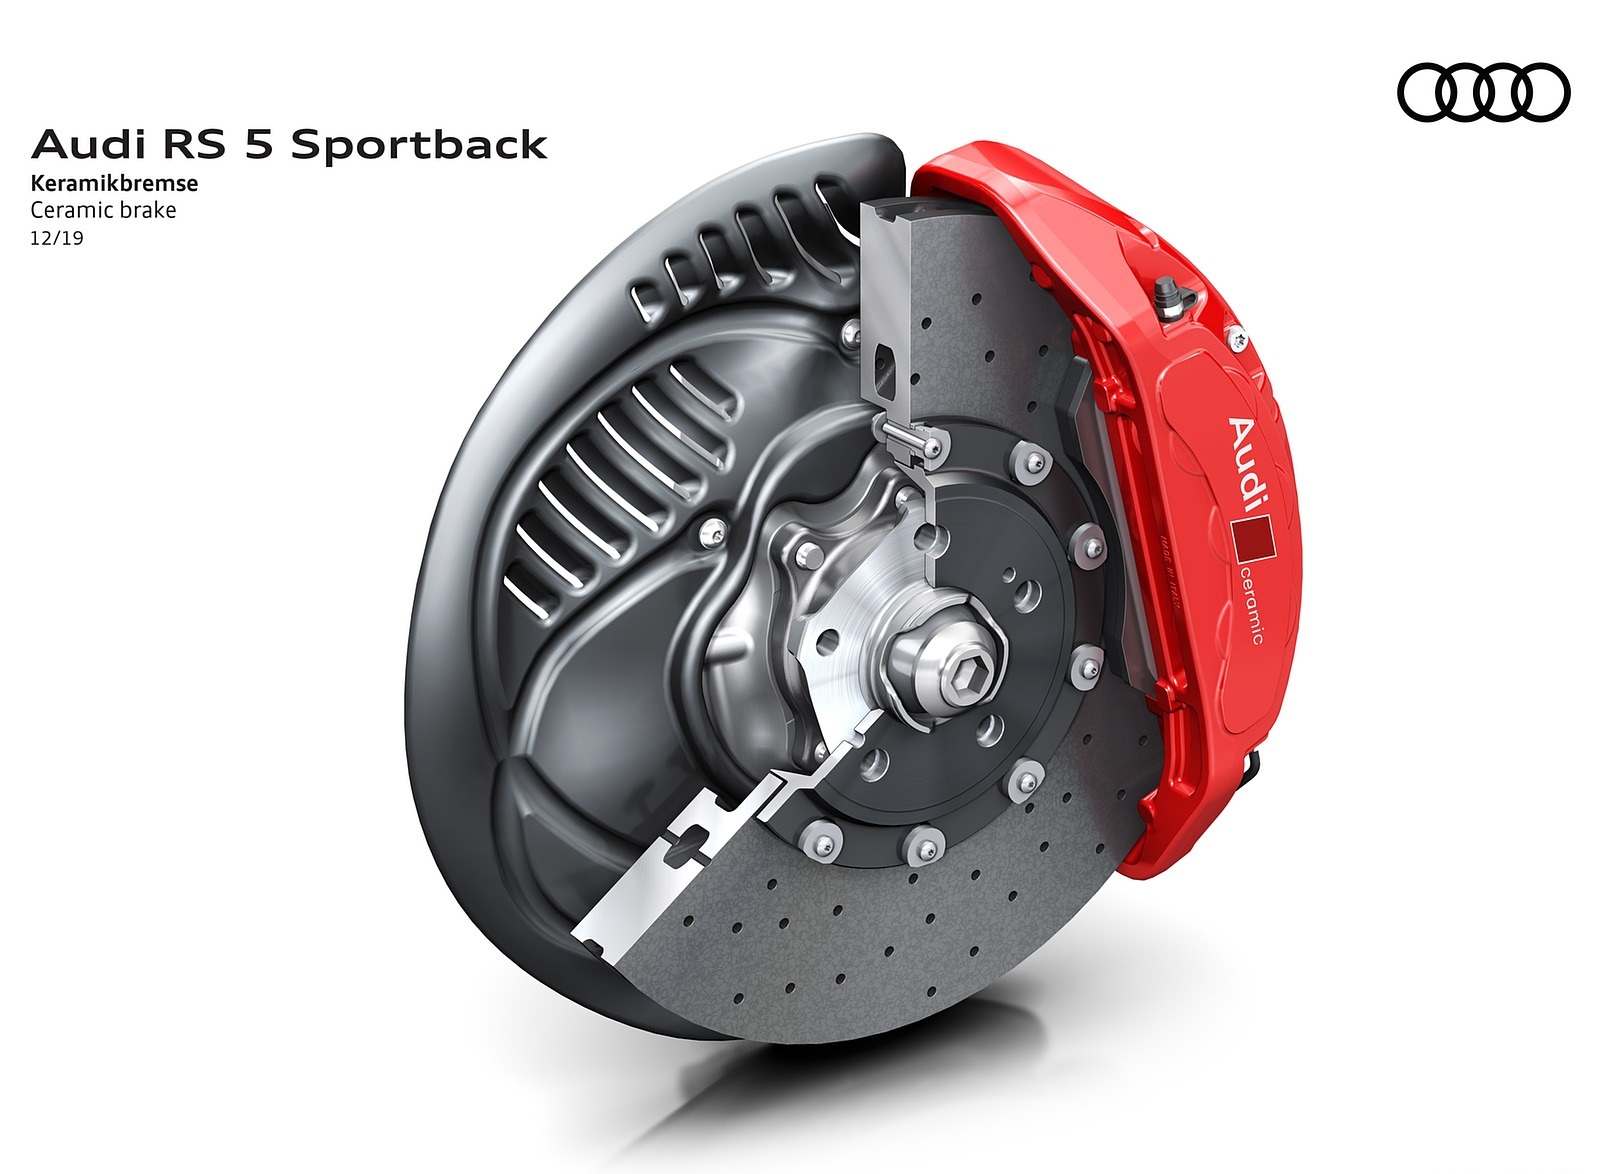 2020 Audi RS 5 Sportback Ceramic brake Wallpapers #73 of 76